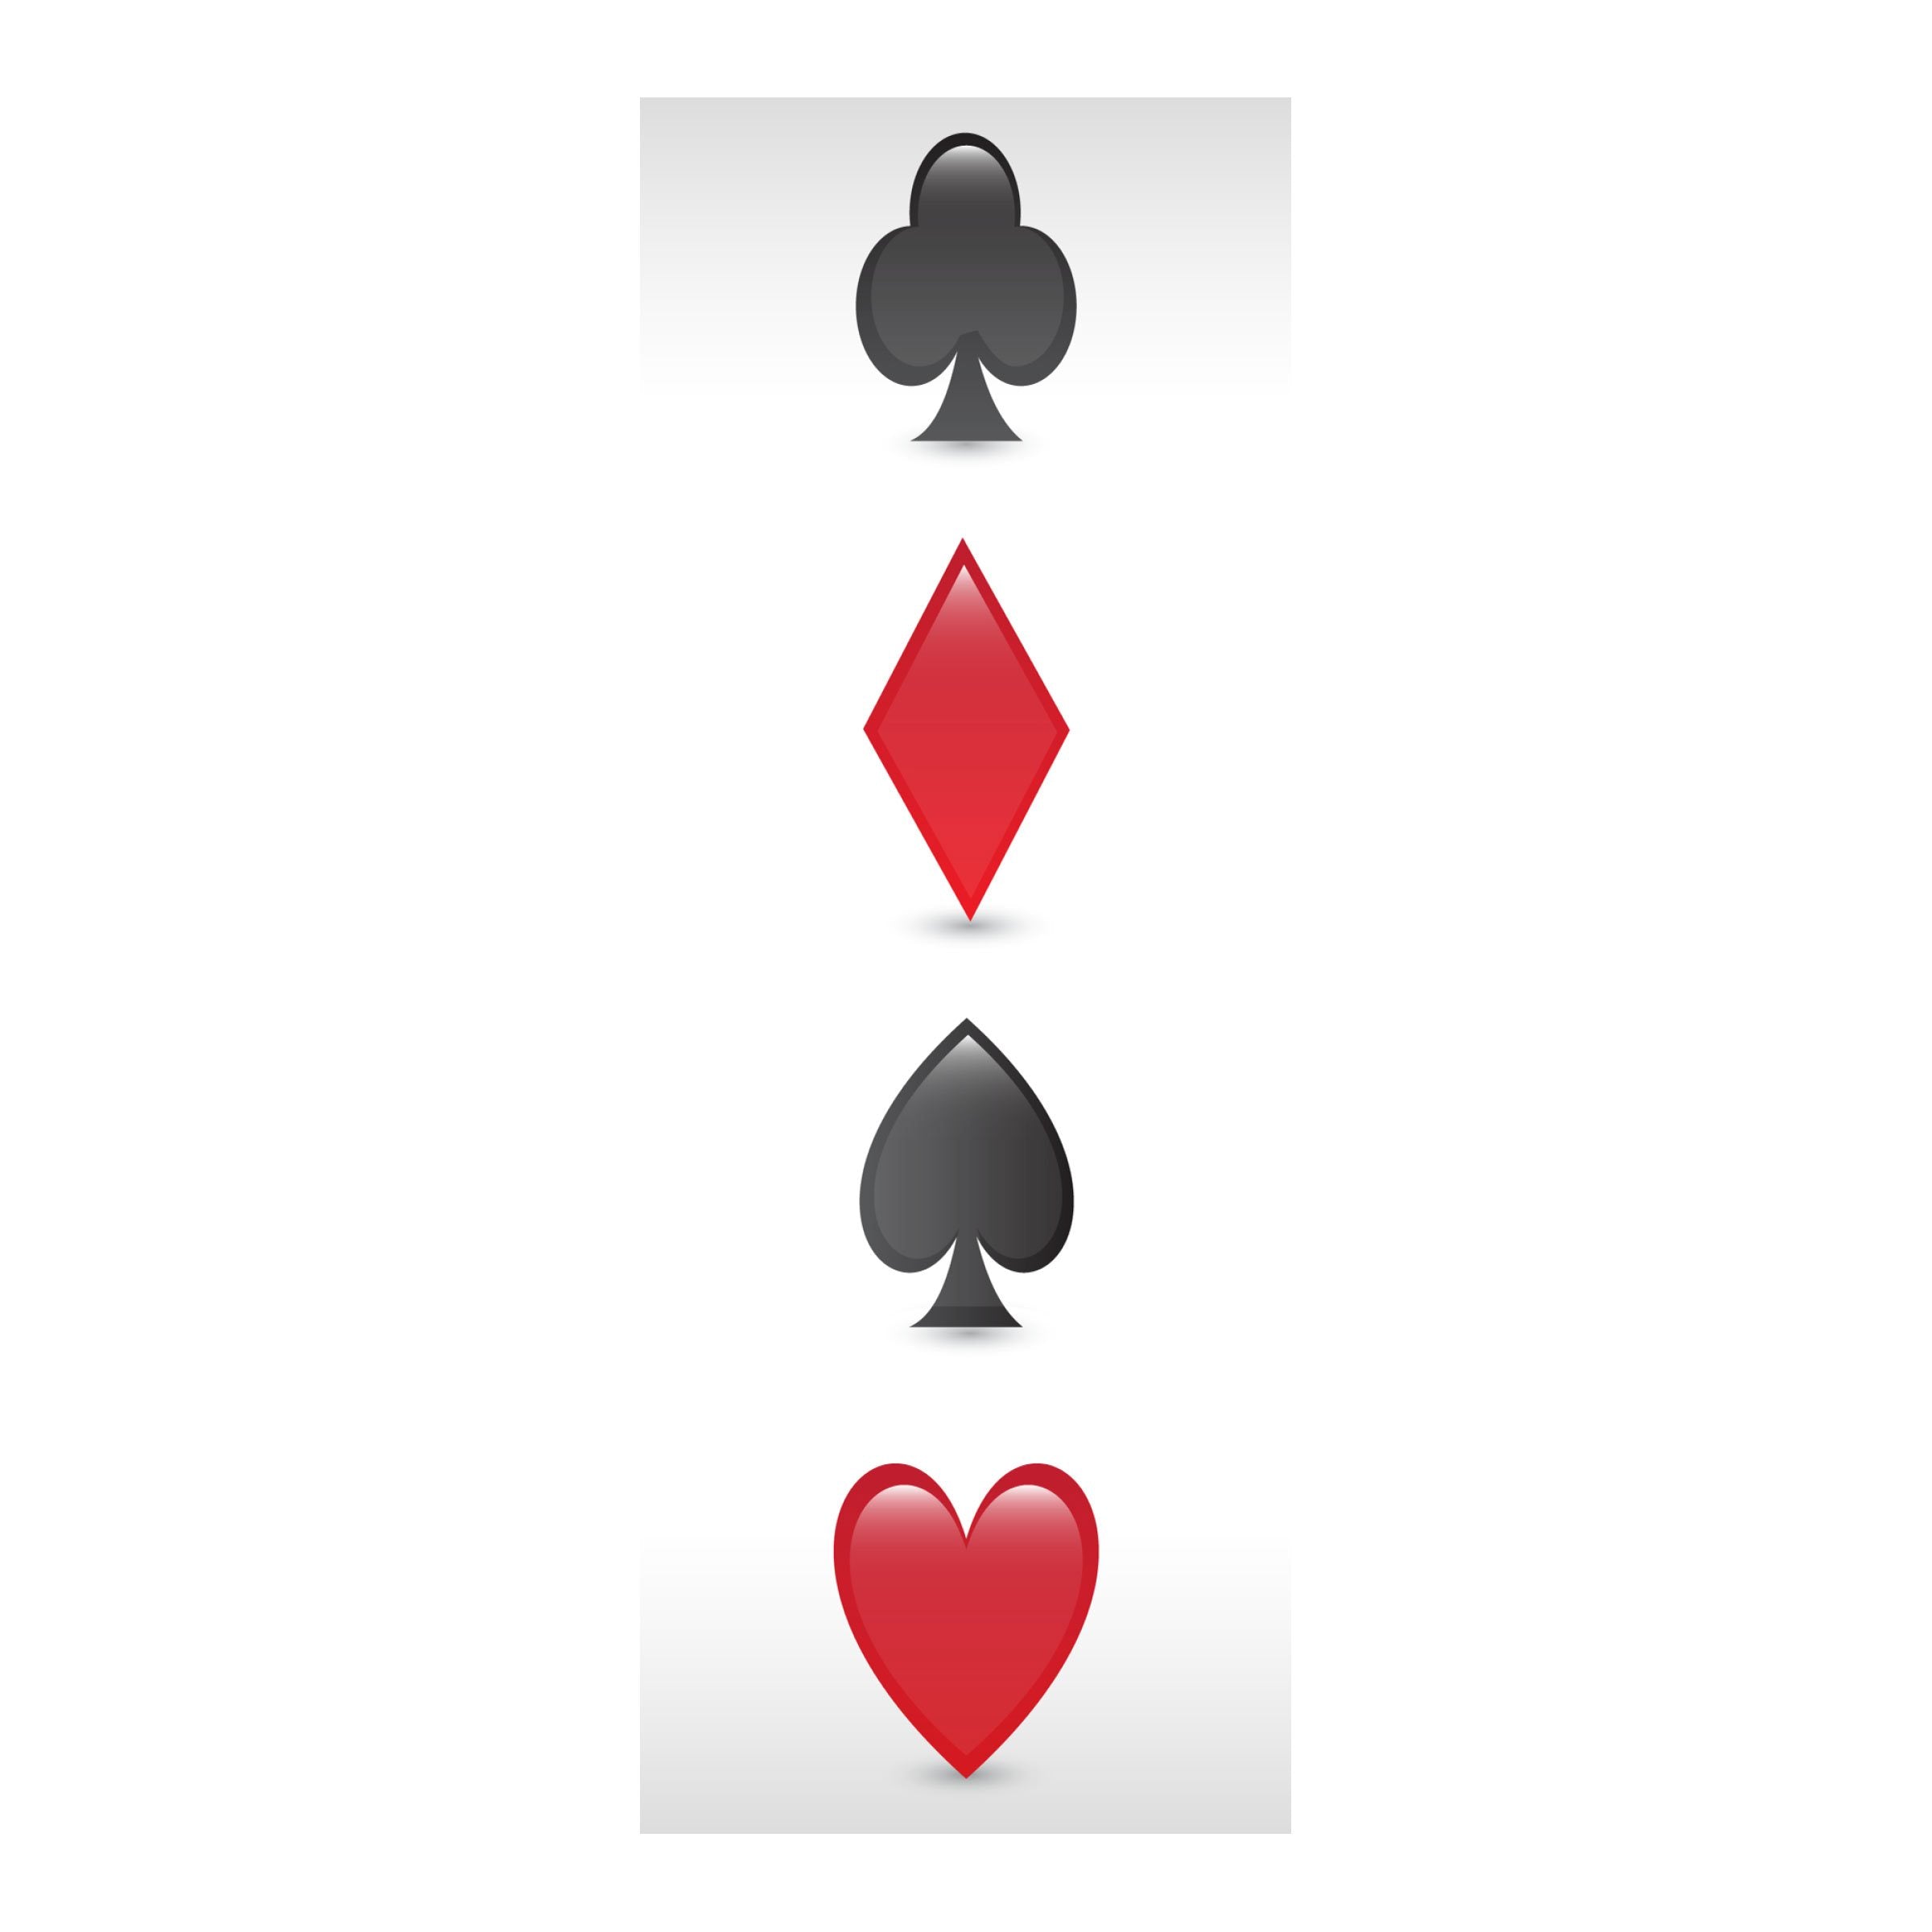 #design_poker